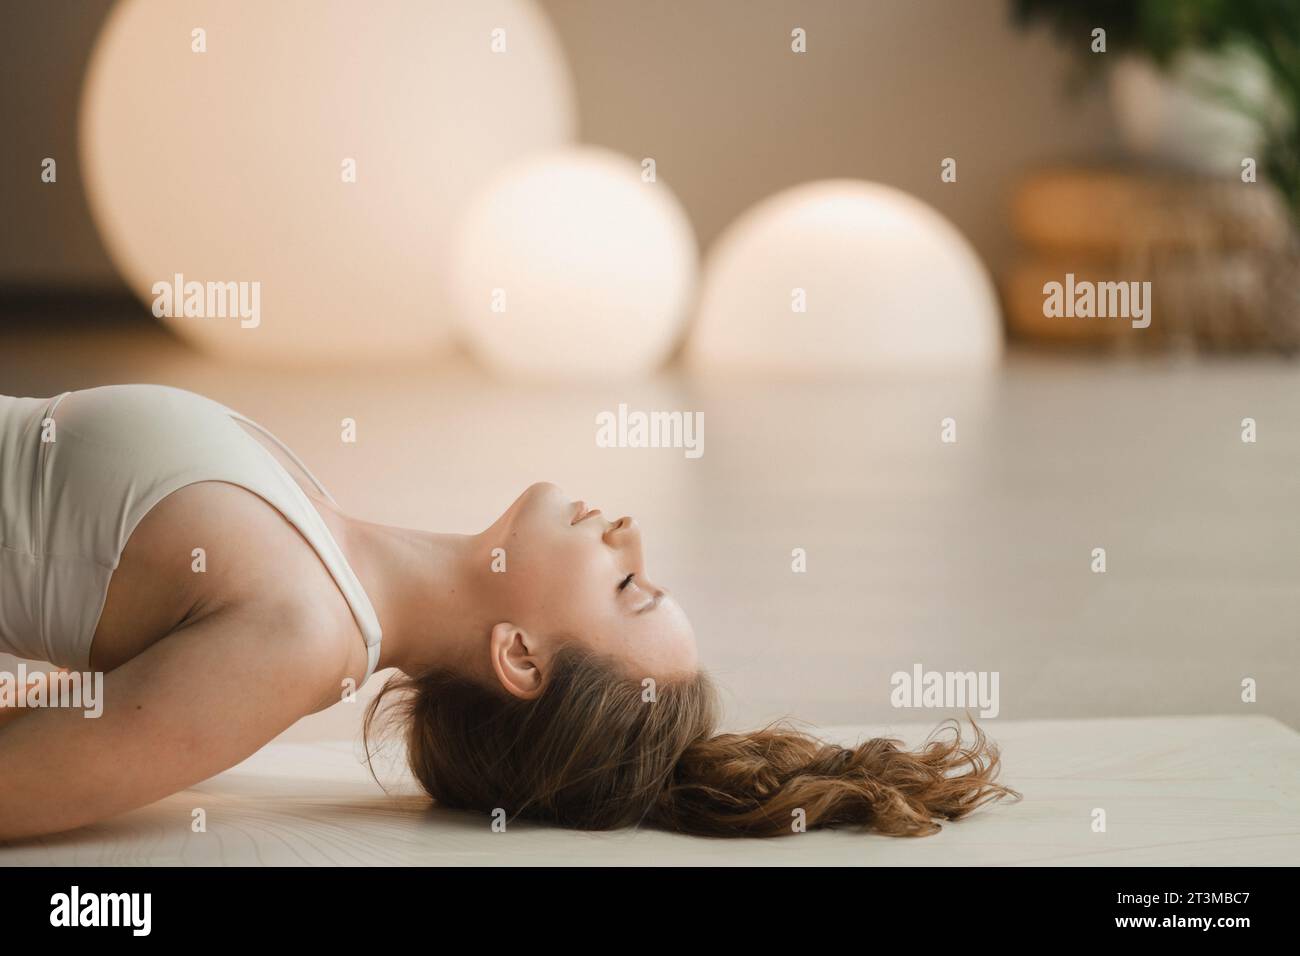 Una ragazza con vestiti bianchi fa yoga sdraiata su un tappeto al chiuso. Foto Stock